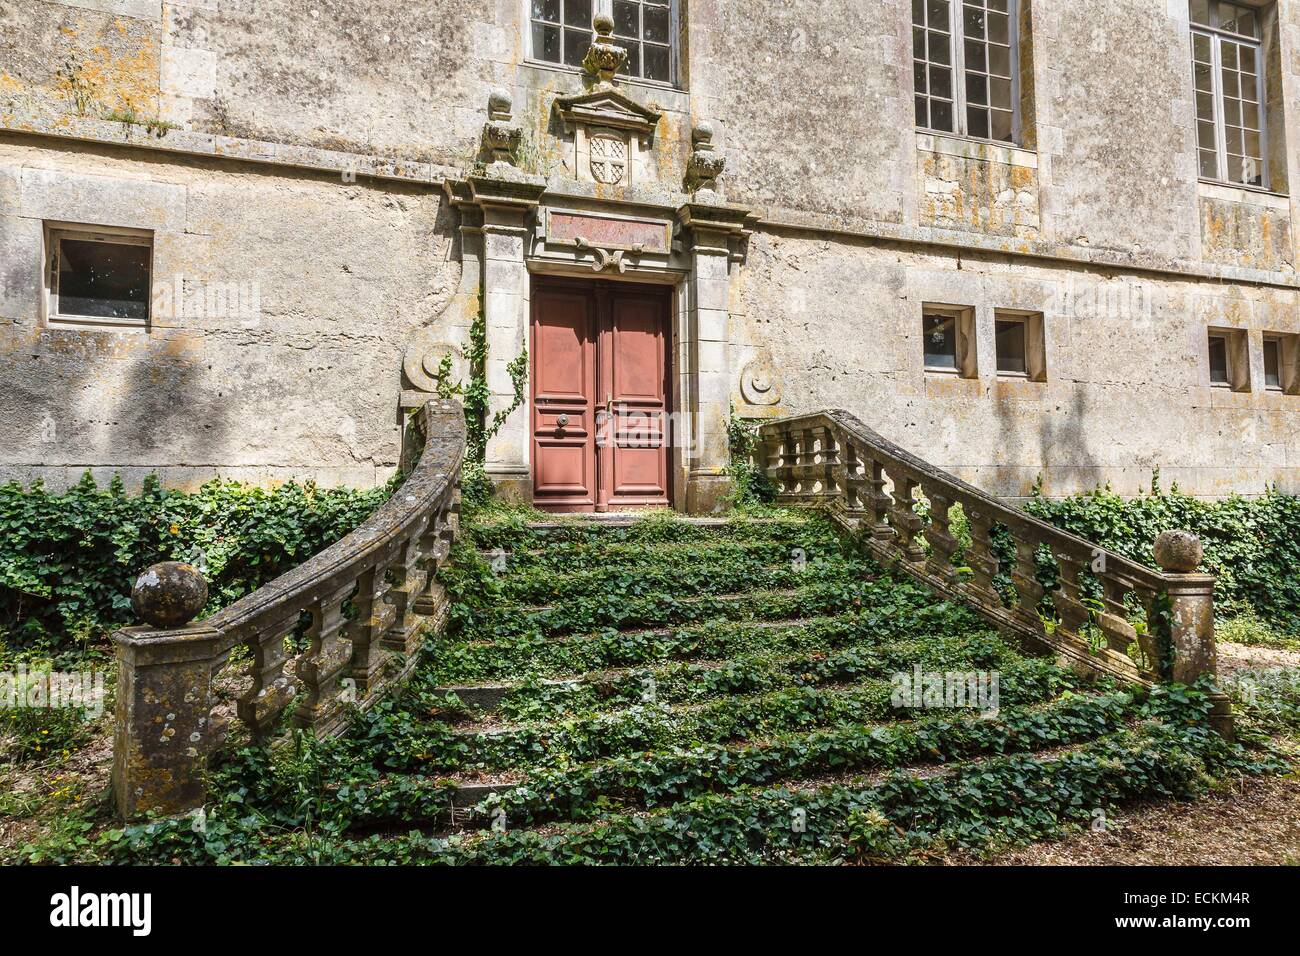 France, Vendée, Saint Michel en l'Herm, l'abbaye royale, la porte du château Banque D'Images